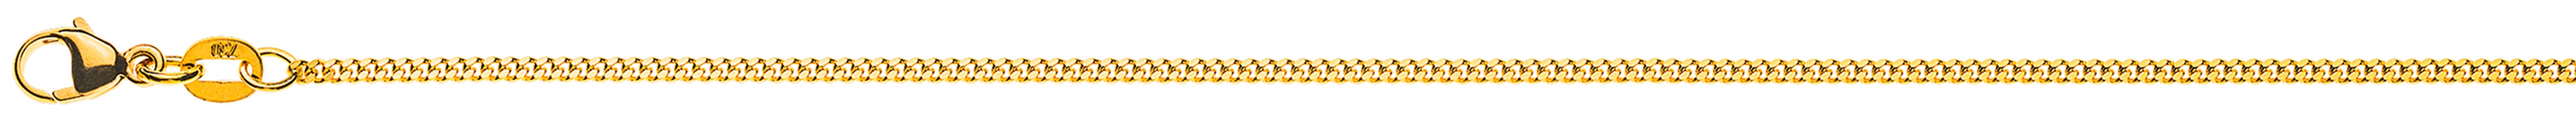 AURONOS Élégance Necklace yellow gold 14K curb chain polished 42cm 1.6mm